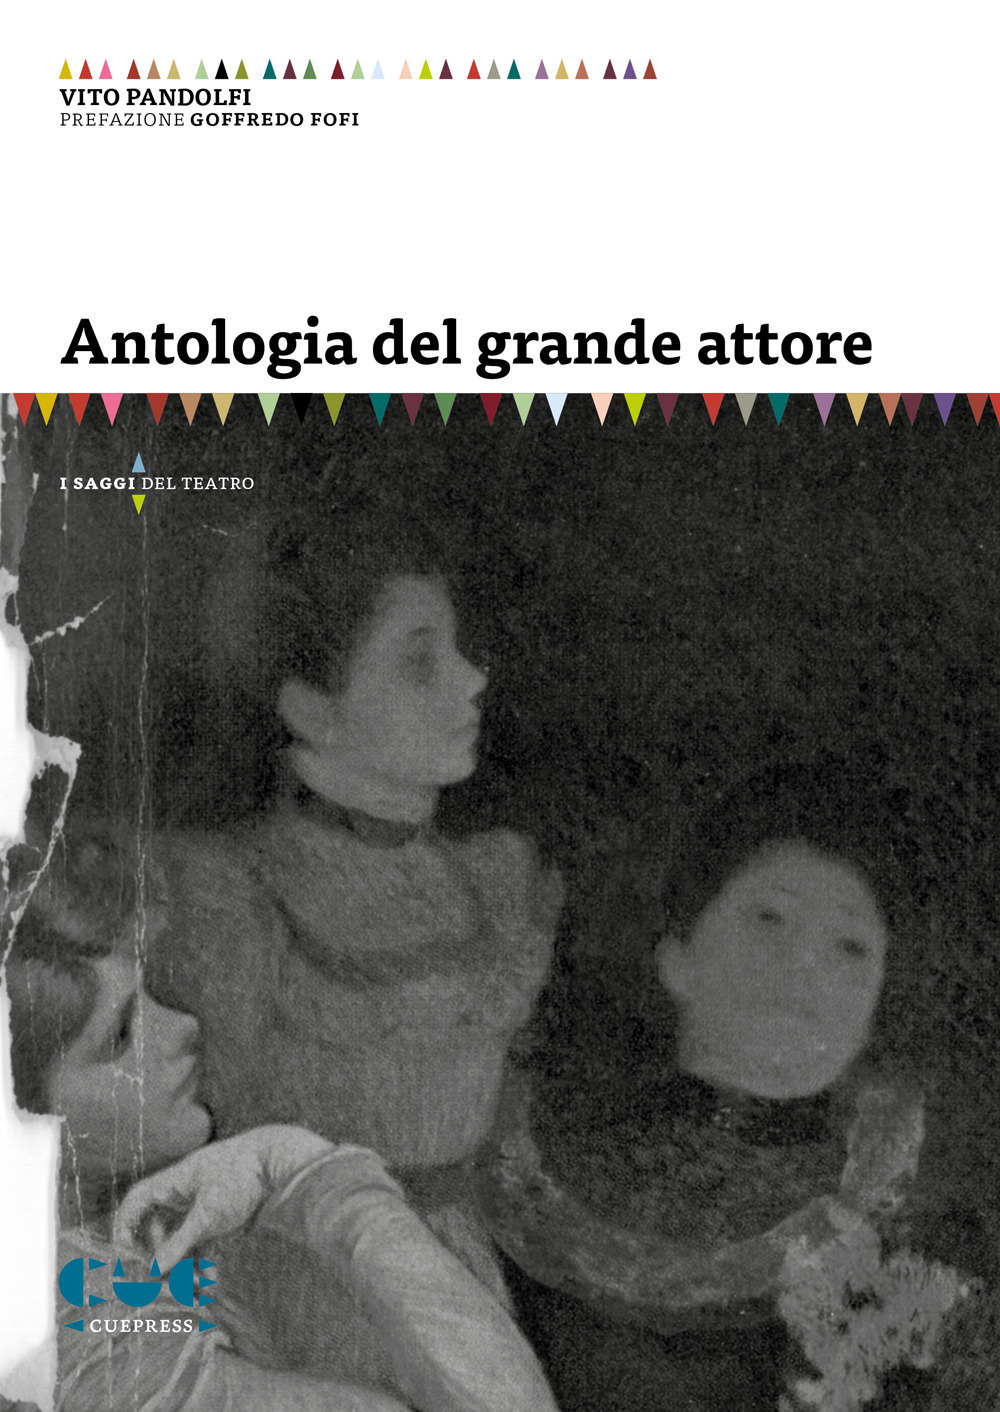 Libri Pandolfi Vito - Antologia Del Grande Attore NUOVO SIGILLATO, EDIZIONE DEL 03/06/2020 SUBITO DISPONIBILE